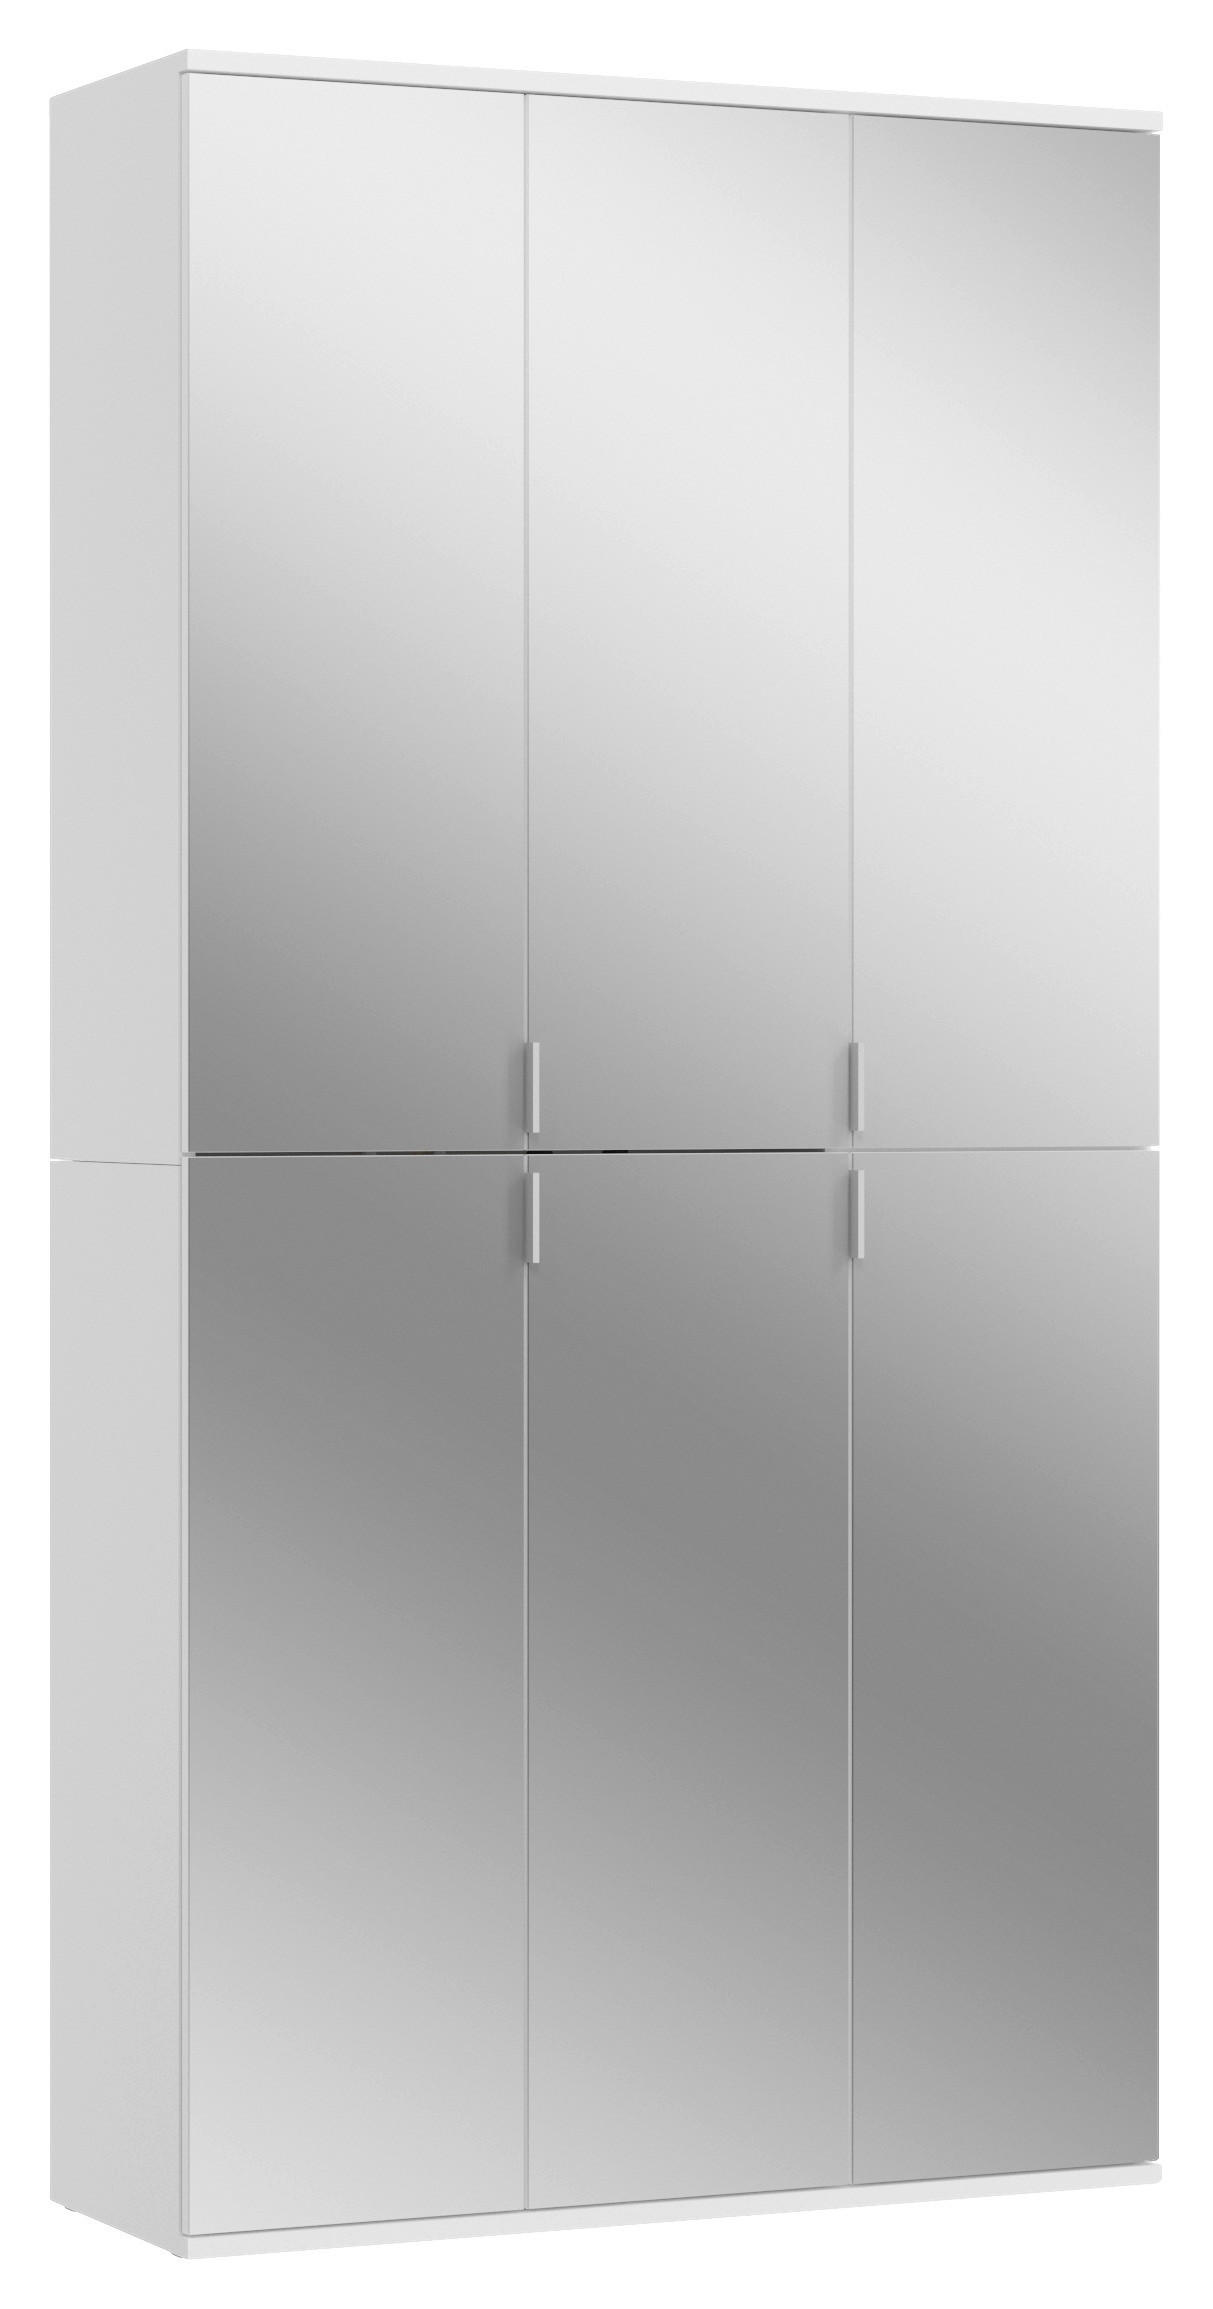 DREHTÜRENSCHRANK 6-türig Weiß  - Chromfarben/Weiß, MODERN, Glas/Holzwerkstoff (91/193/34cm) - MID.YOU